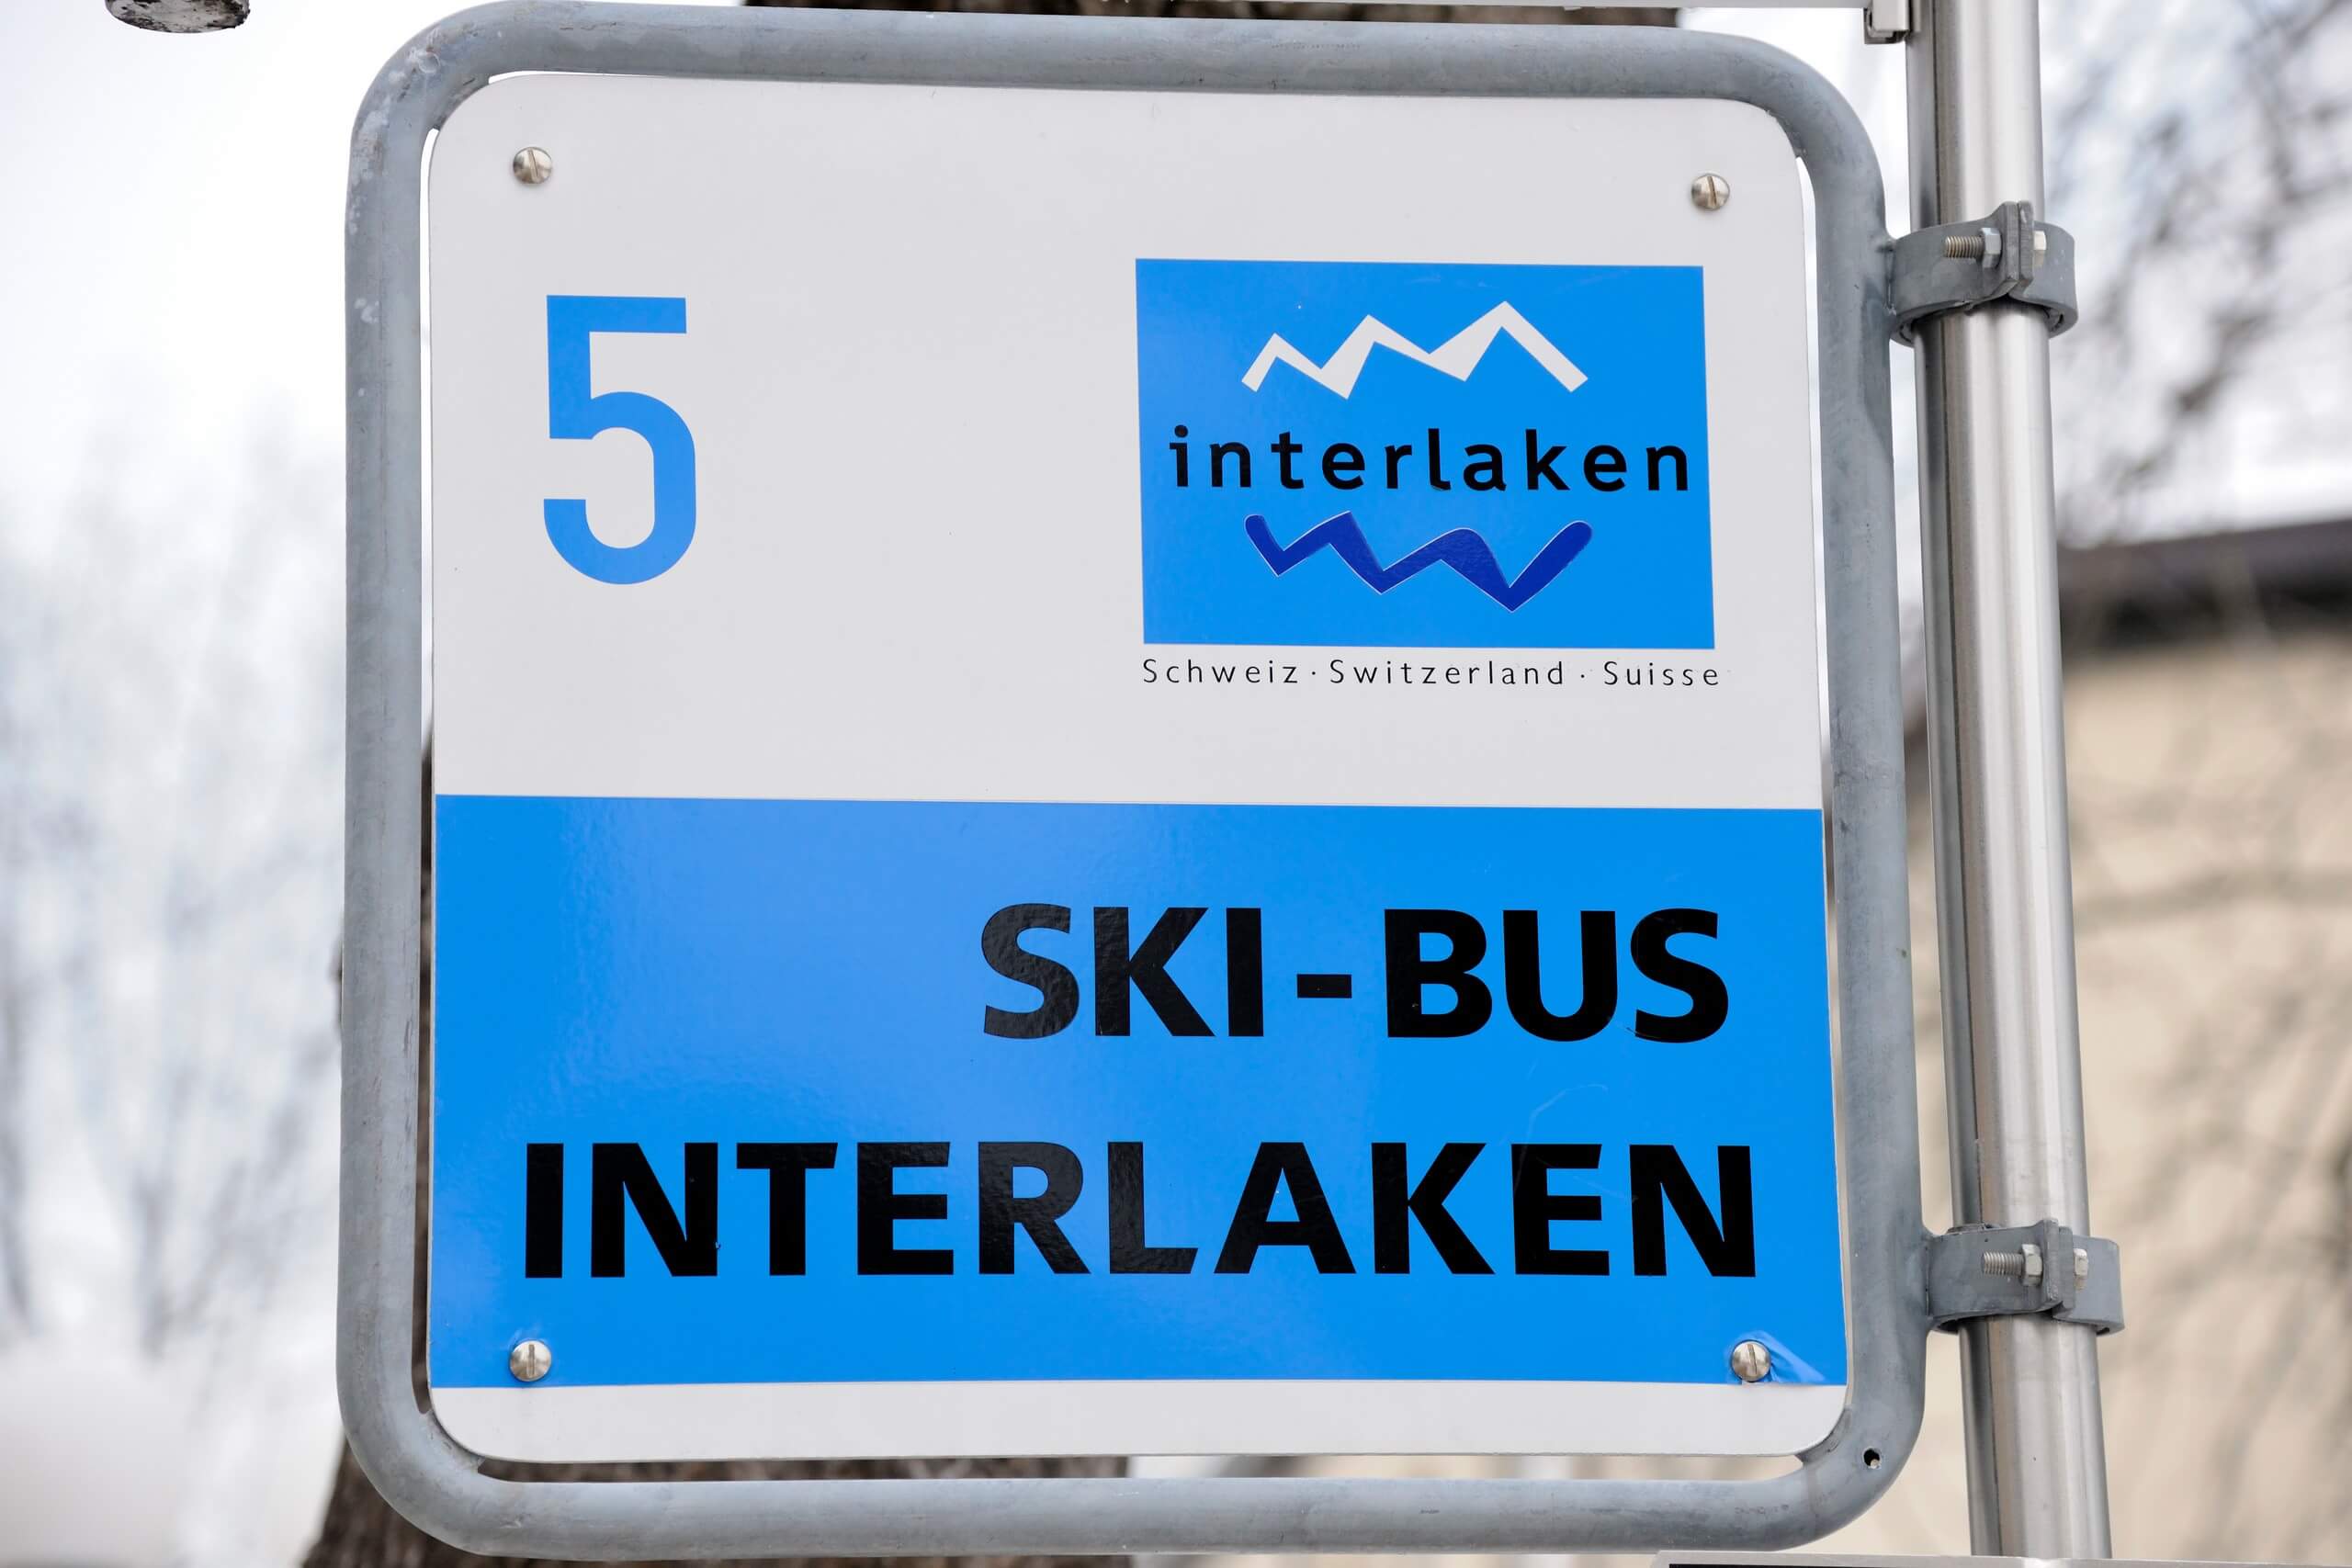 interlaken-skibus-winter-haltestelle-schild